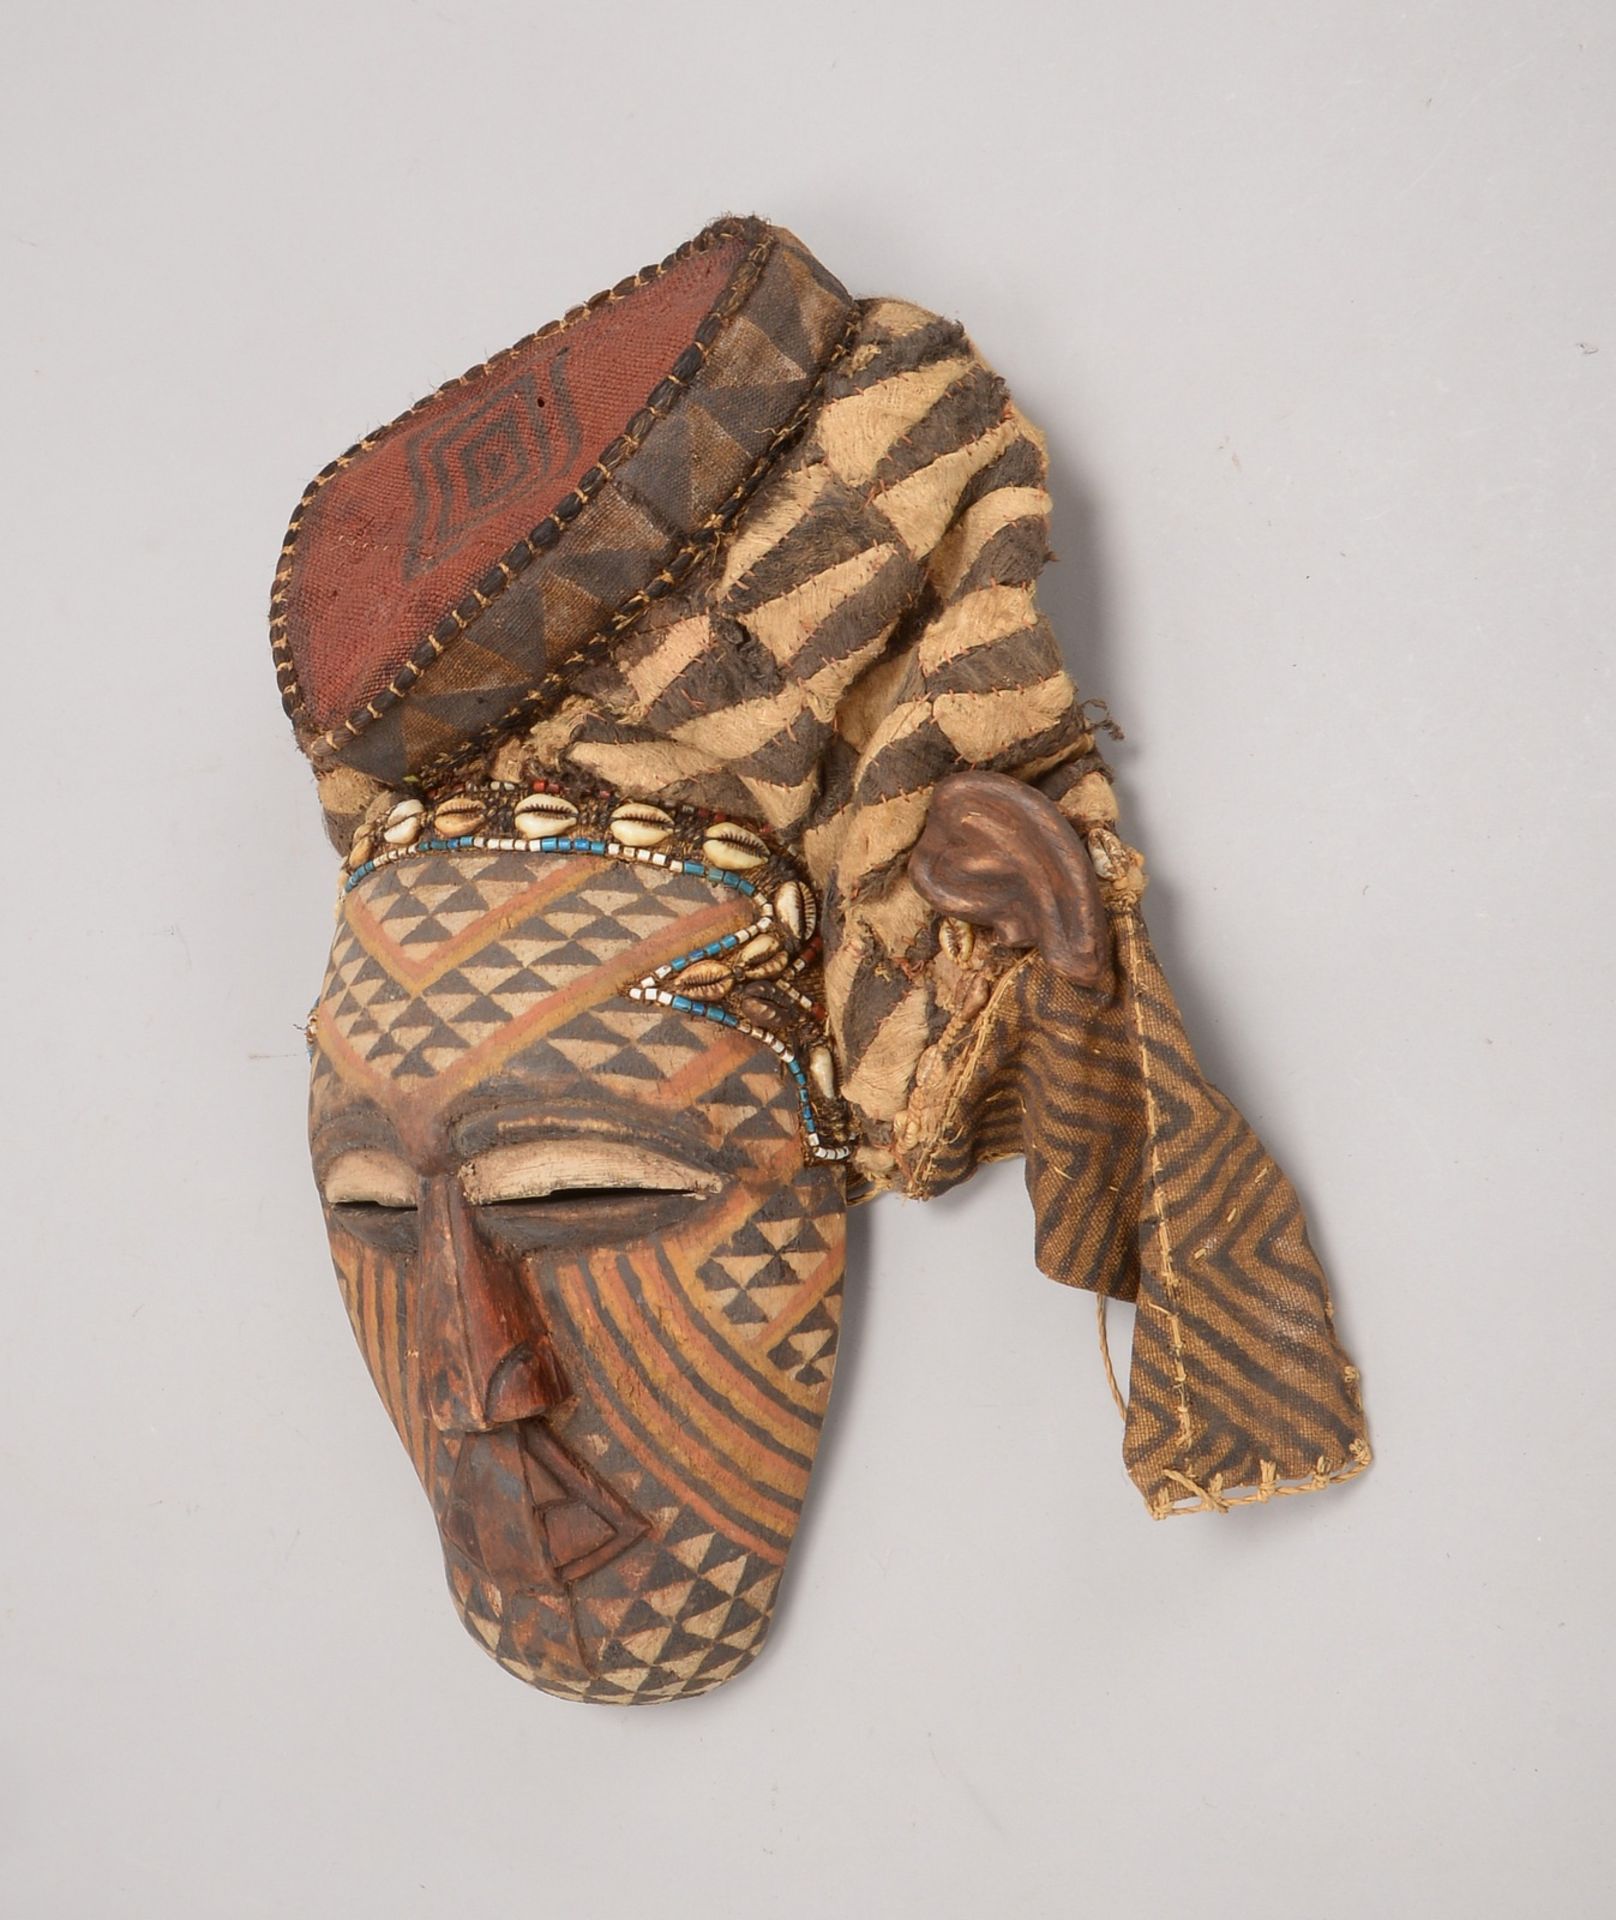 Salampasu-Ritualmaske, Holz mit Kupferblech-Verzierung, teils mit Bastkugeln - Bild 2 aus 2